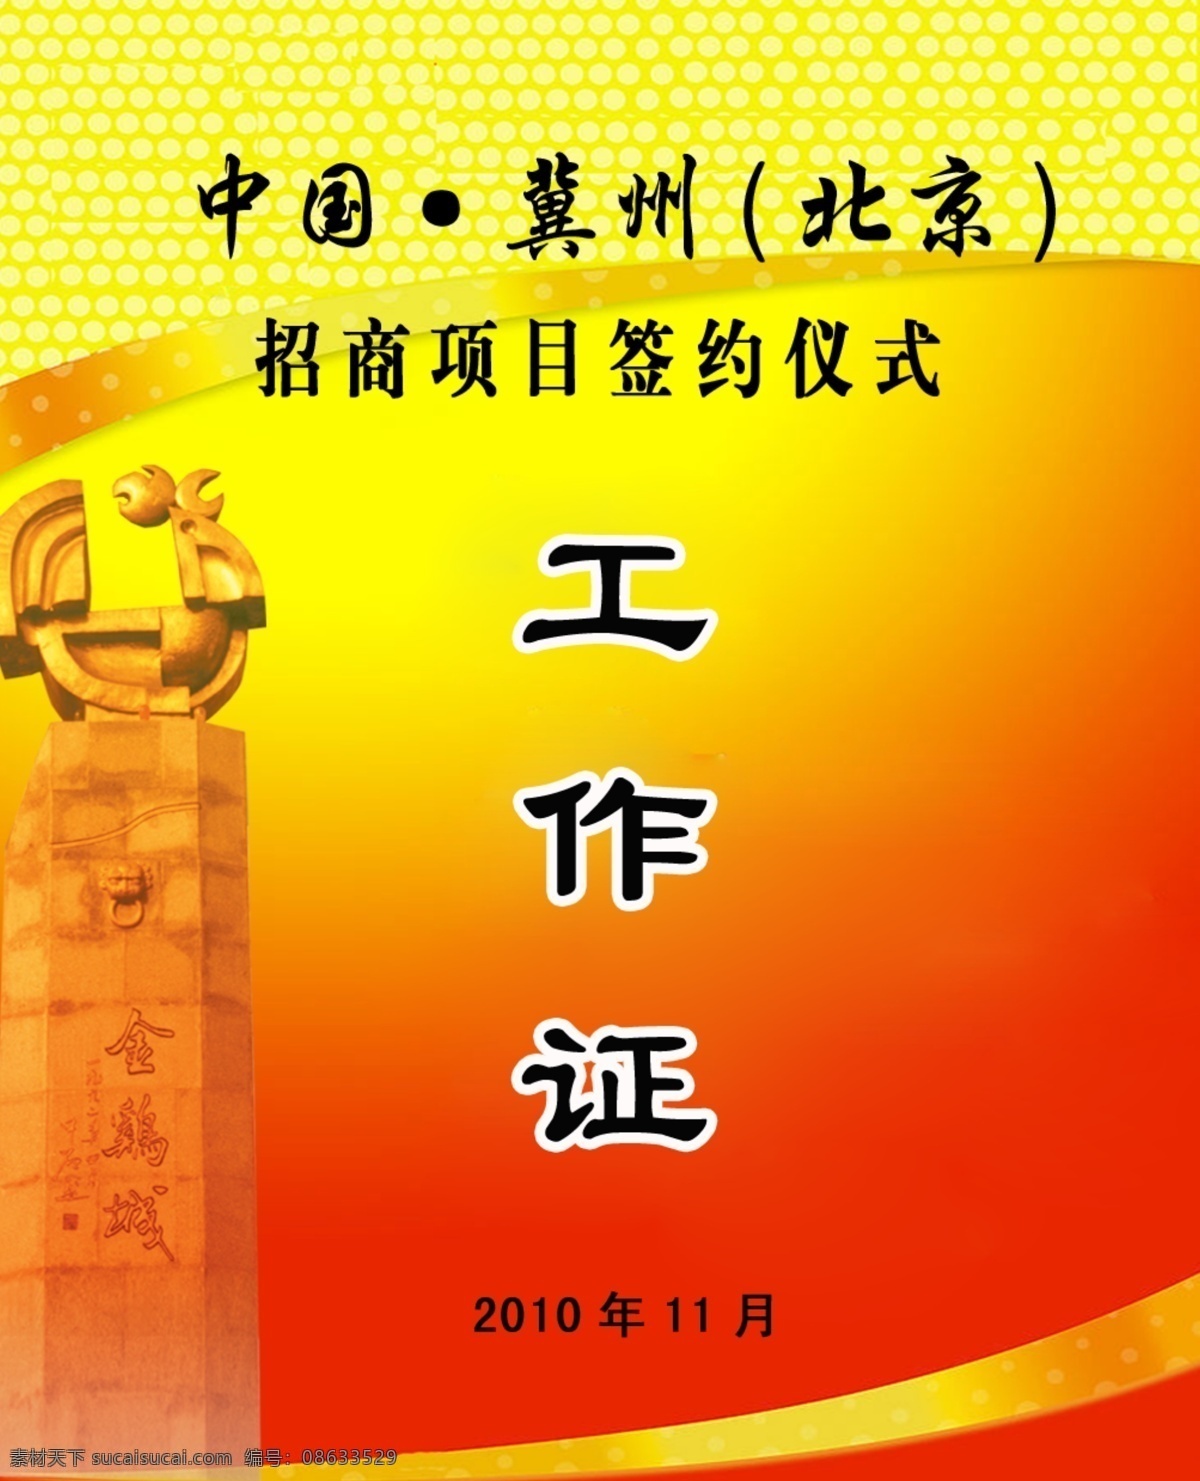 北京 个性 工作证 模板下载 广告设计模板 红色 黄色 其他模版 金鸡城 签约 招商 项目 仪式 源文件 海报 其他海报设计